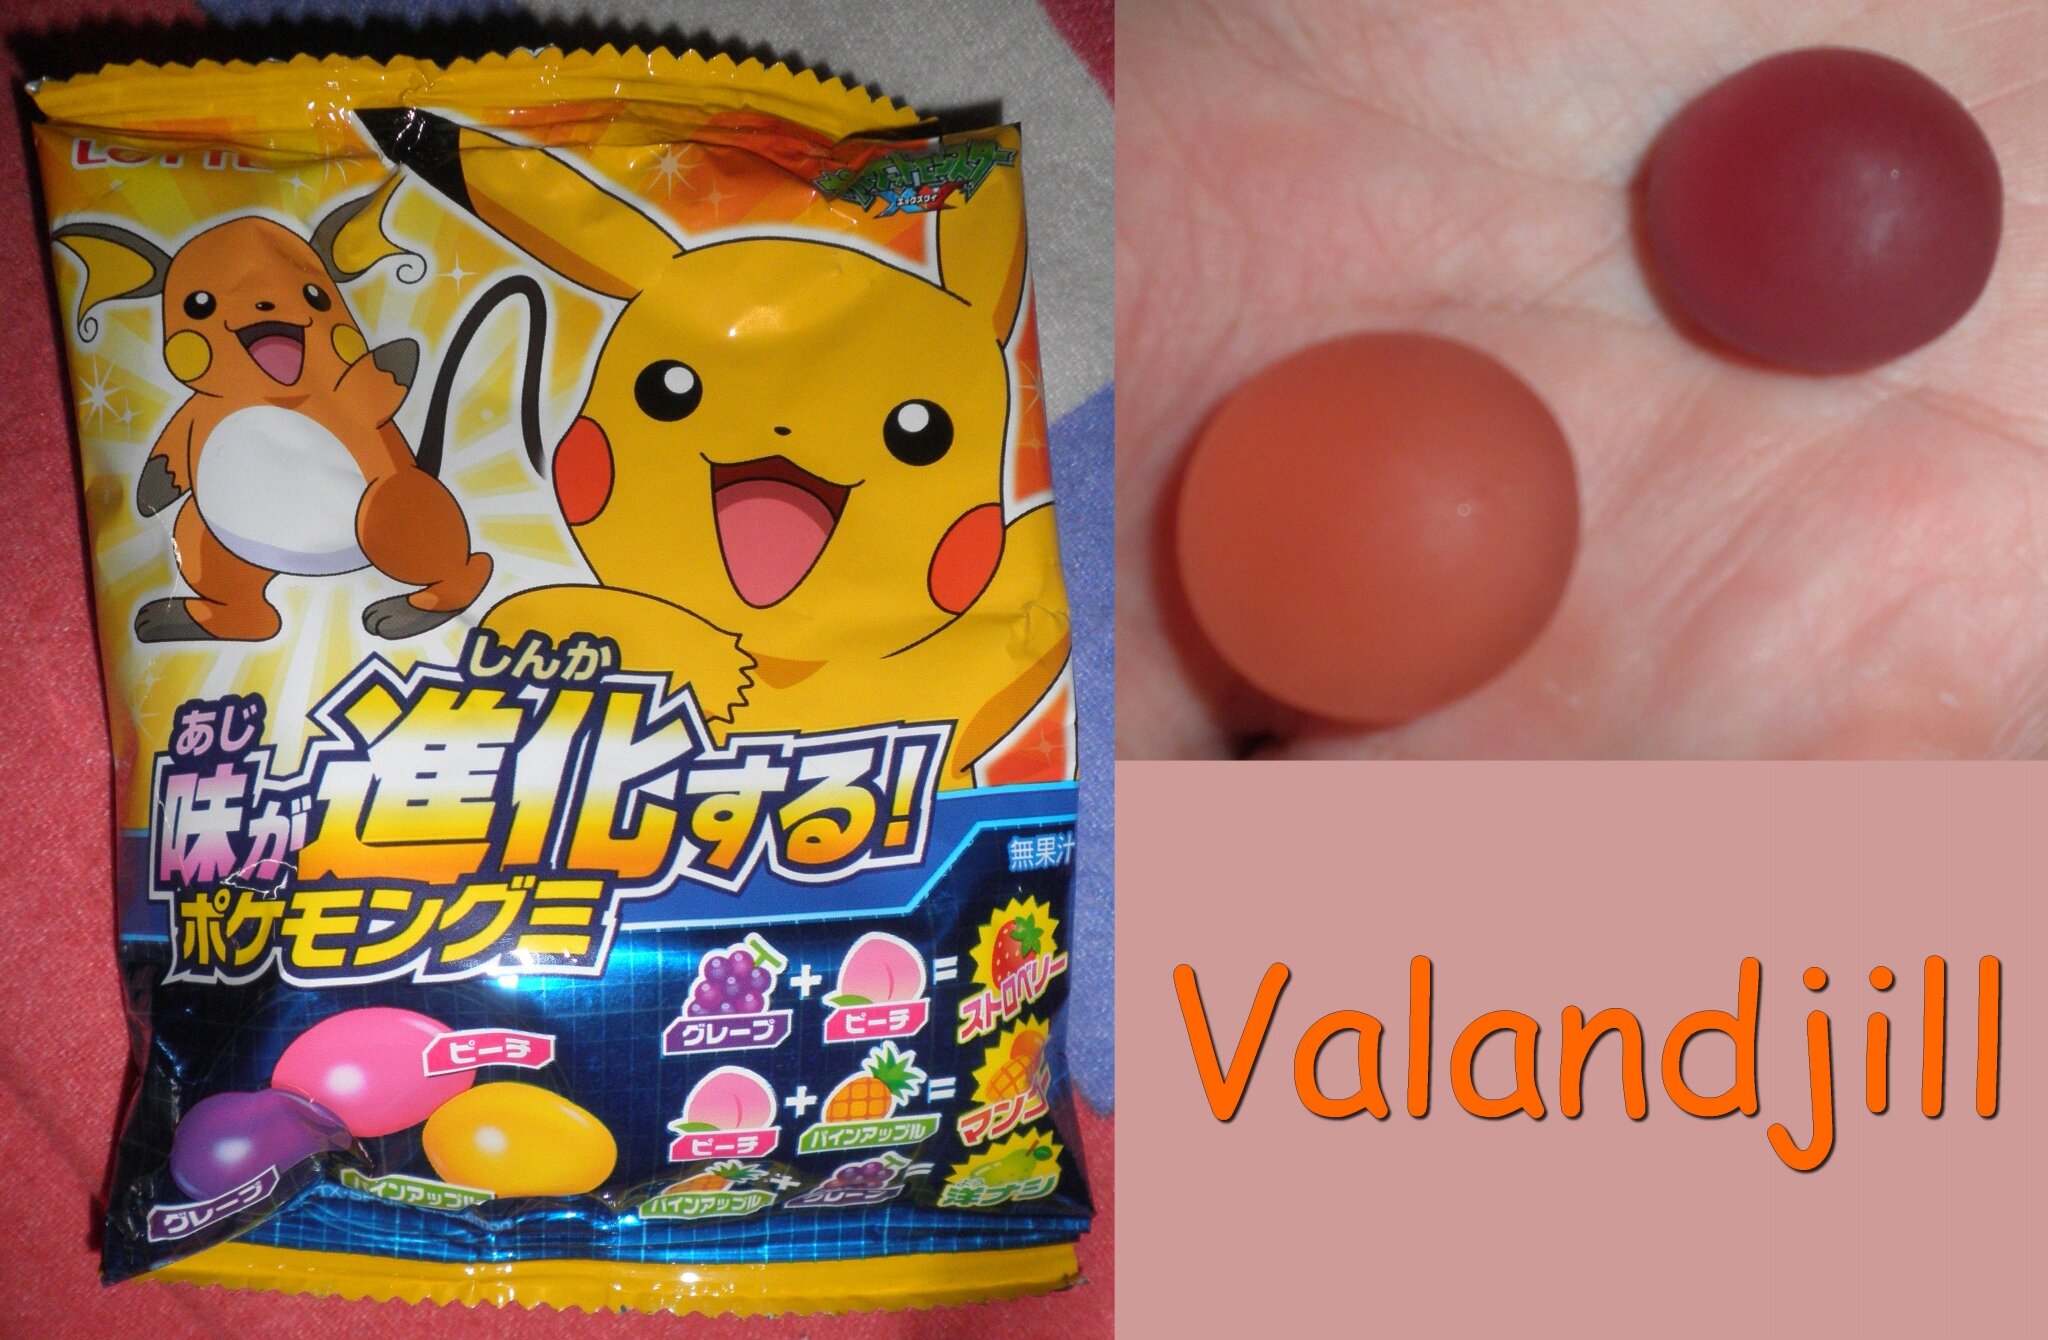 Bonbon aux fruits pokémon- Pokémon gumi (Candysan) - Délices du Japon